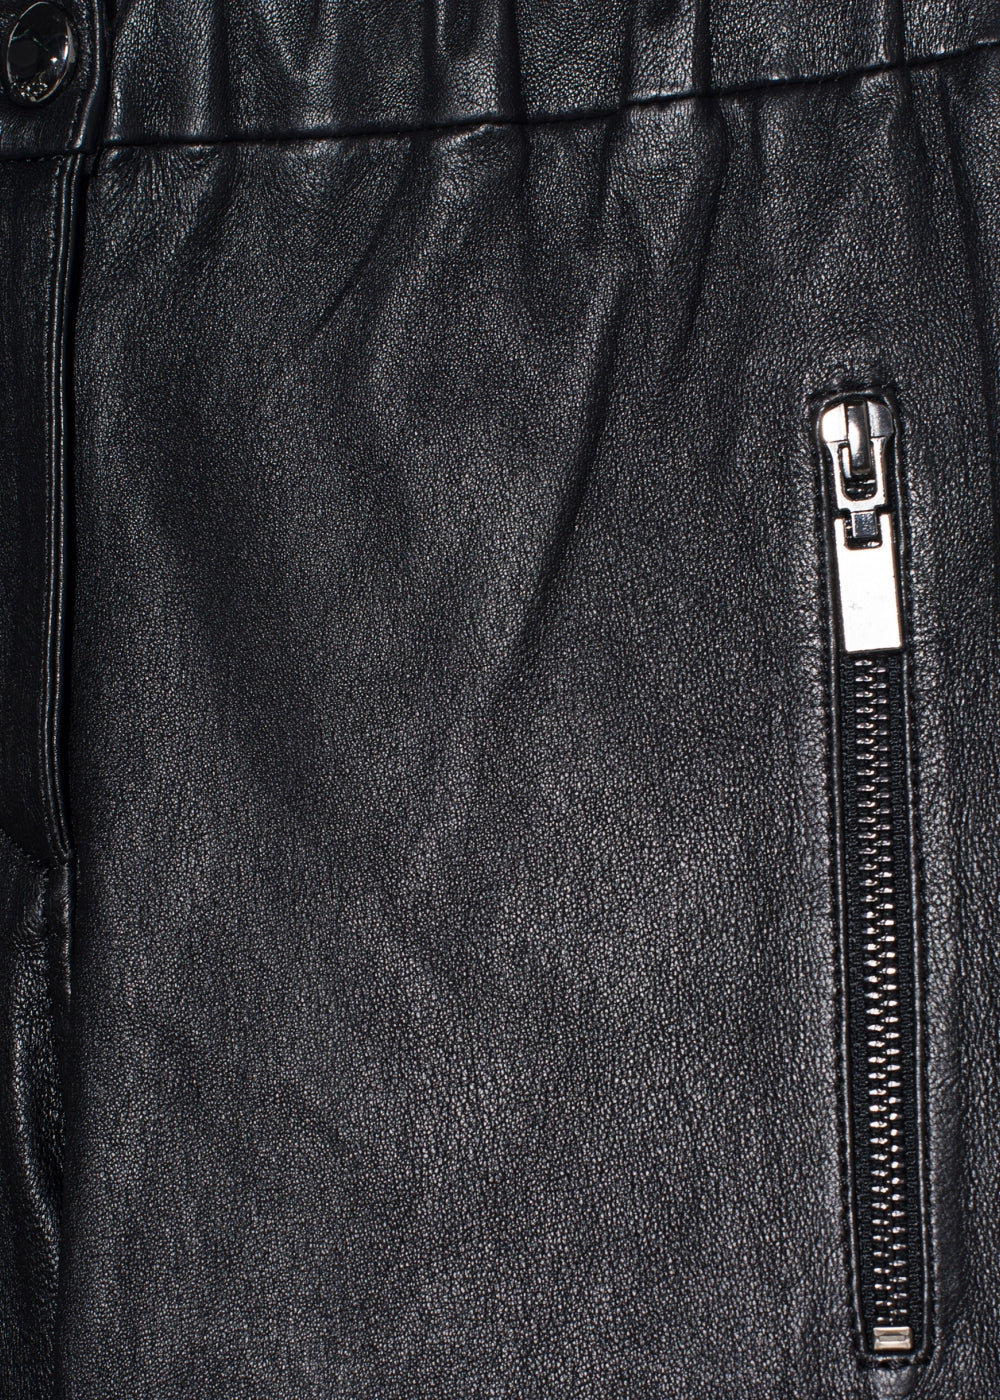 Arma Lederhose Cadiz in schwarzen Nappaleder. Slim fit Hose mit 7/8 Länge und sportiven Reißverschlüssen aus der neuen Arma Leder Kollektion.